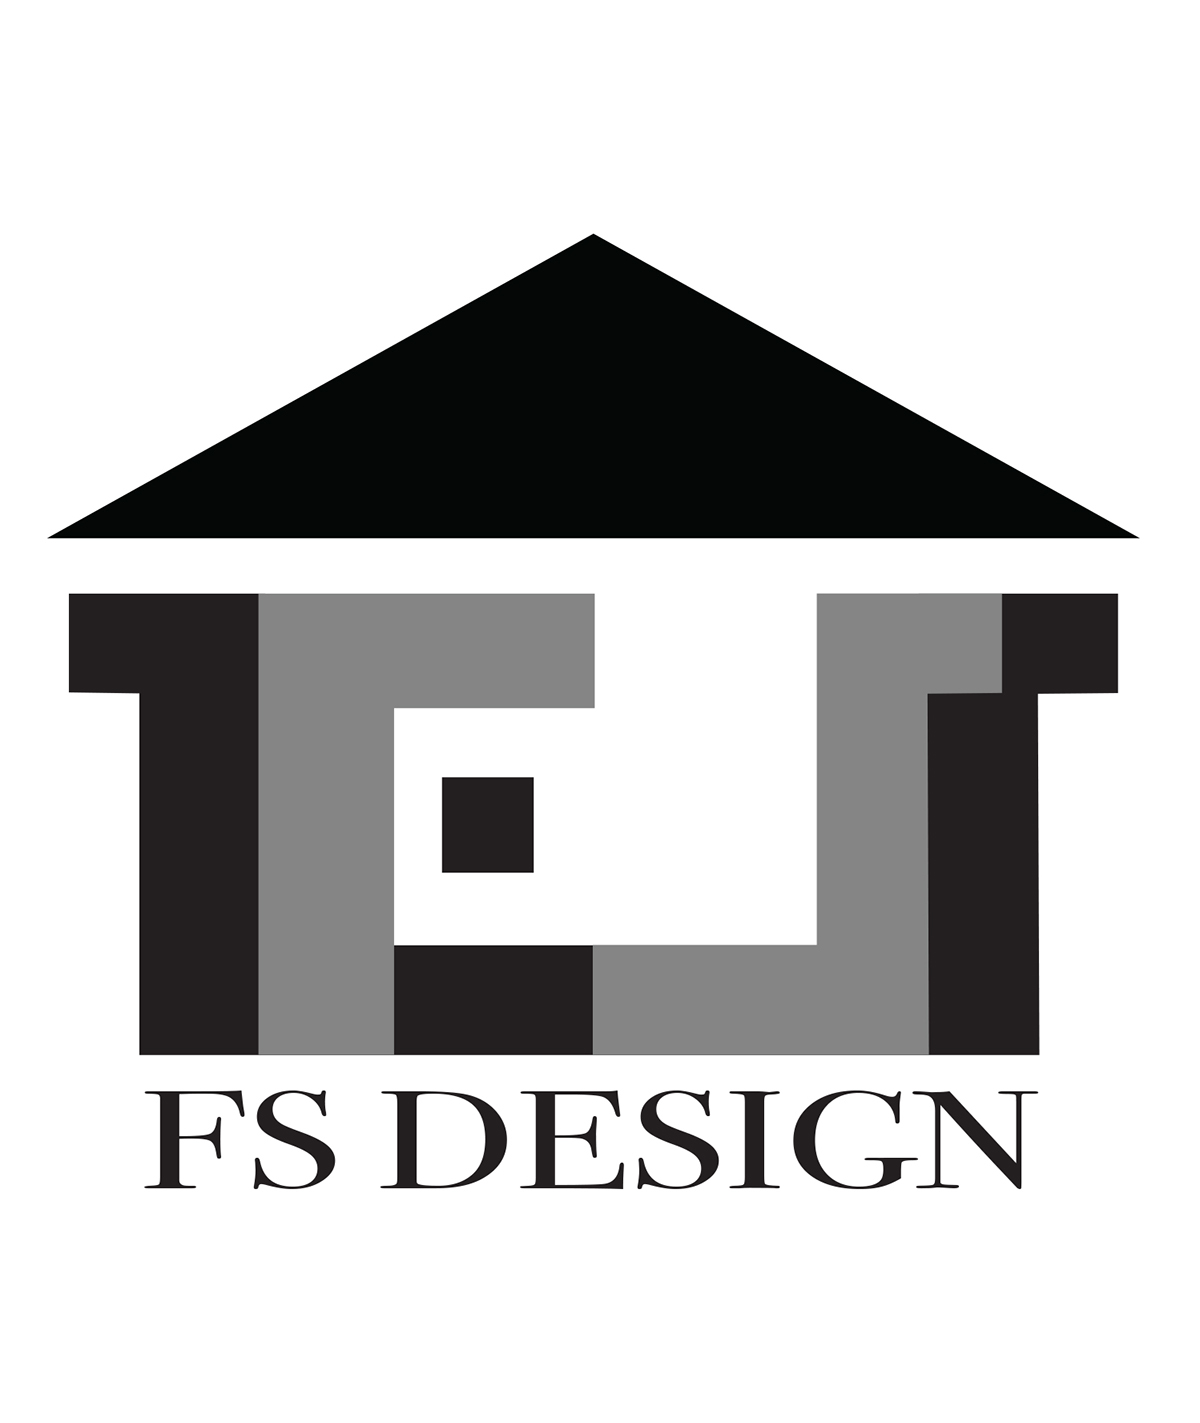 logos digitalart design illustrations